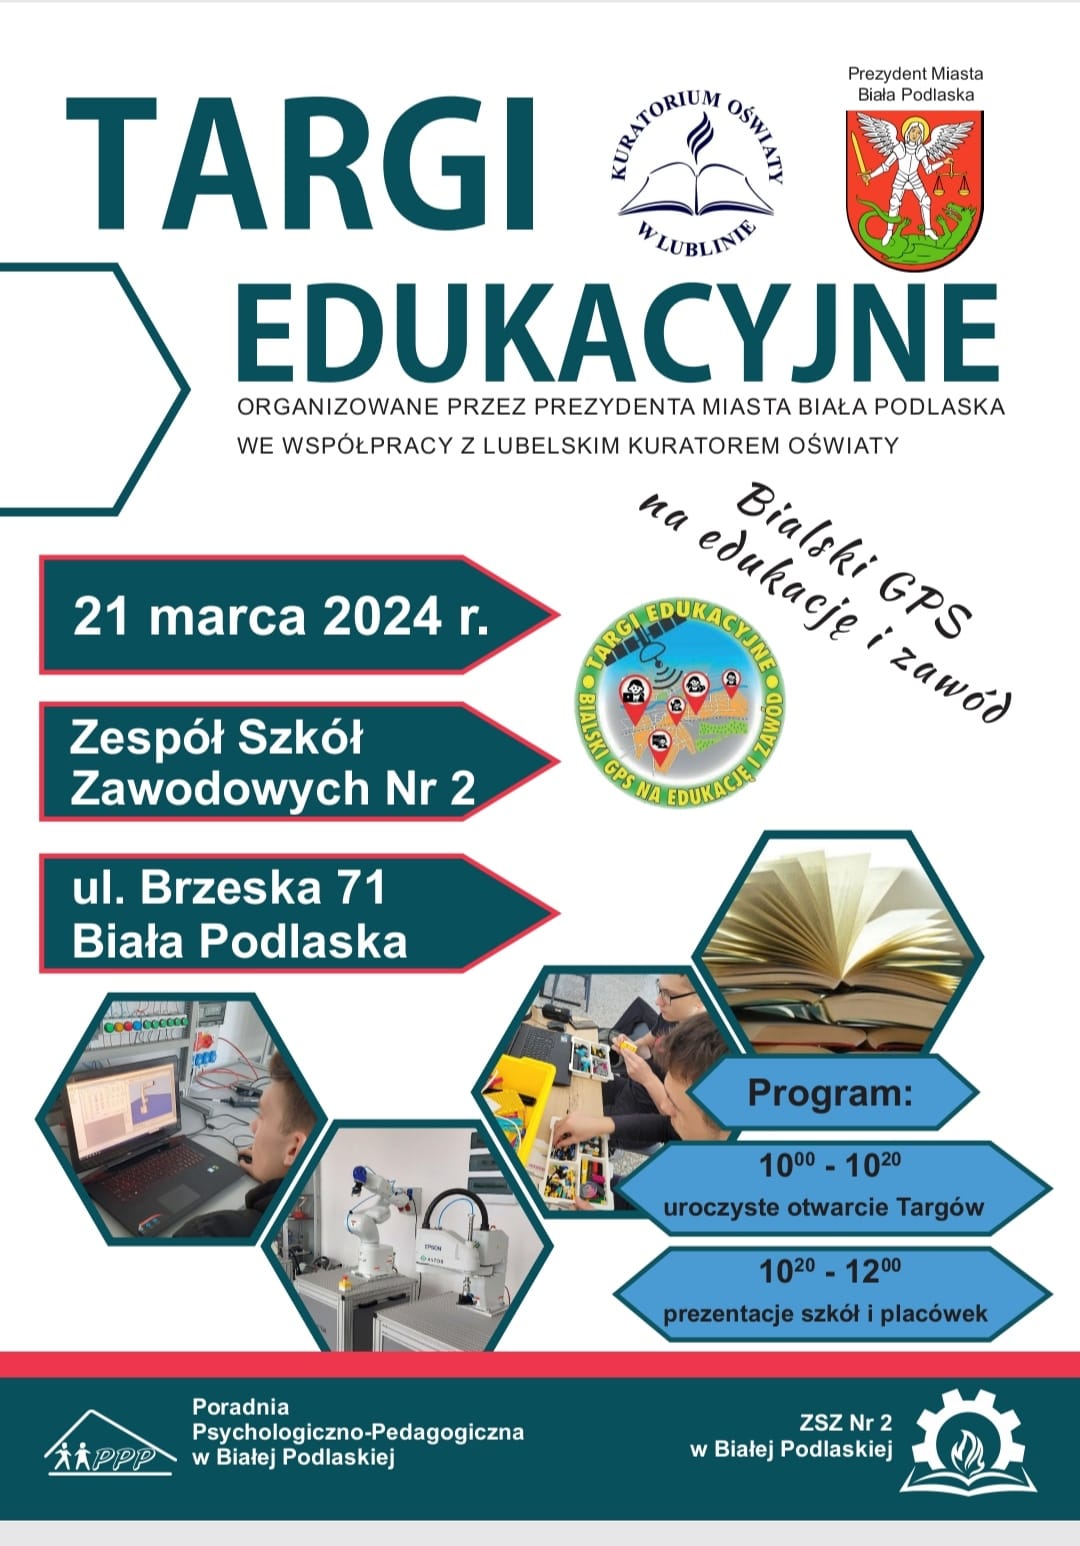 Plakat promujący Targi Edukacyjne 2024r.